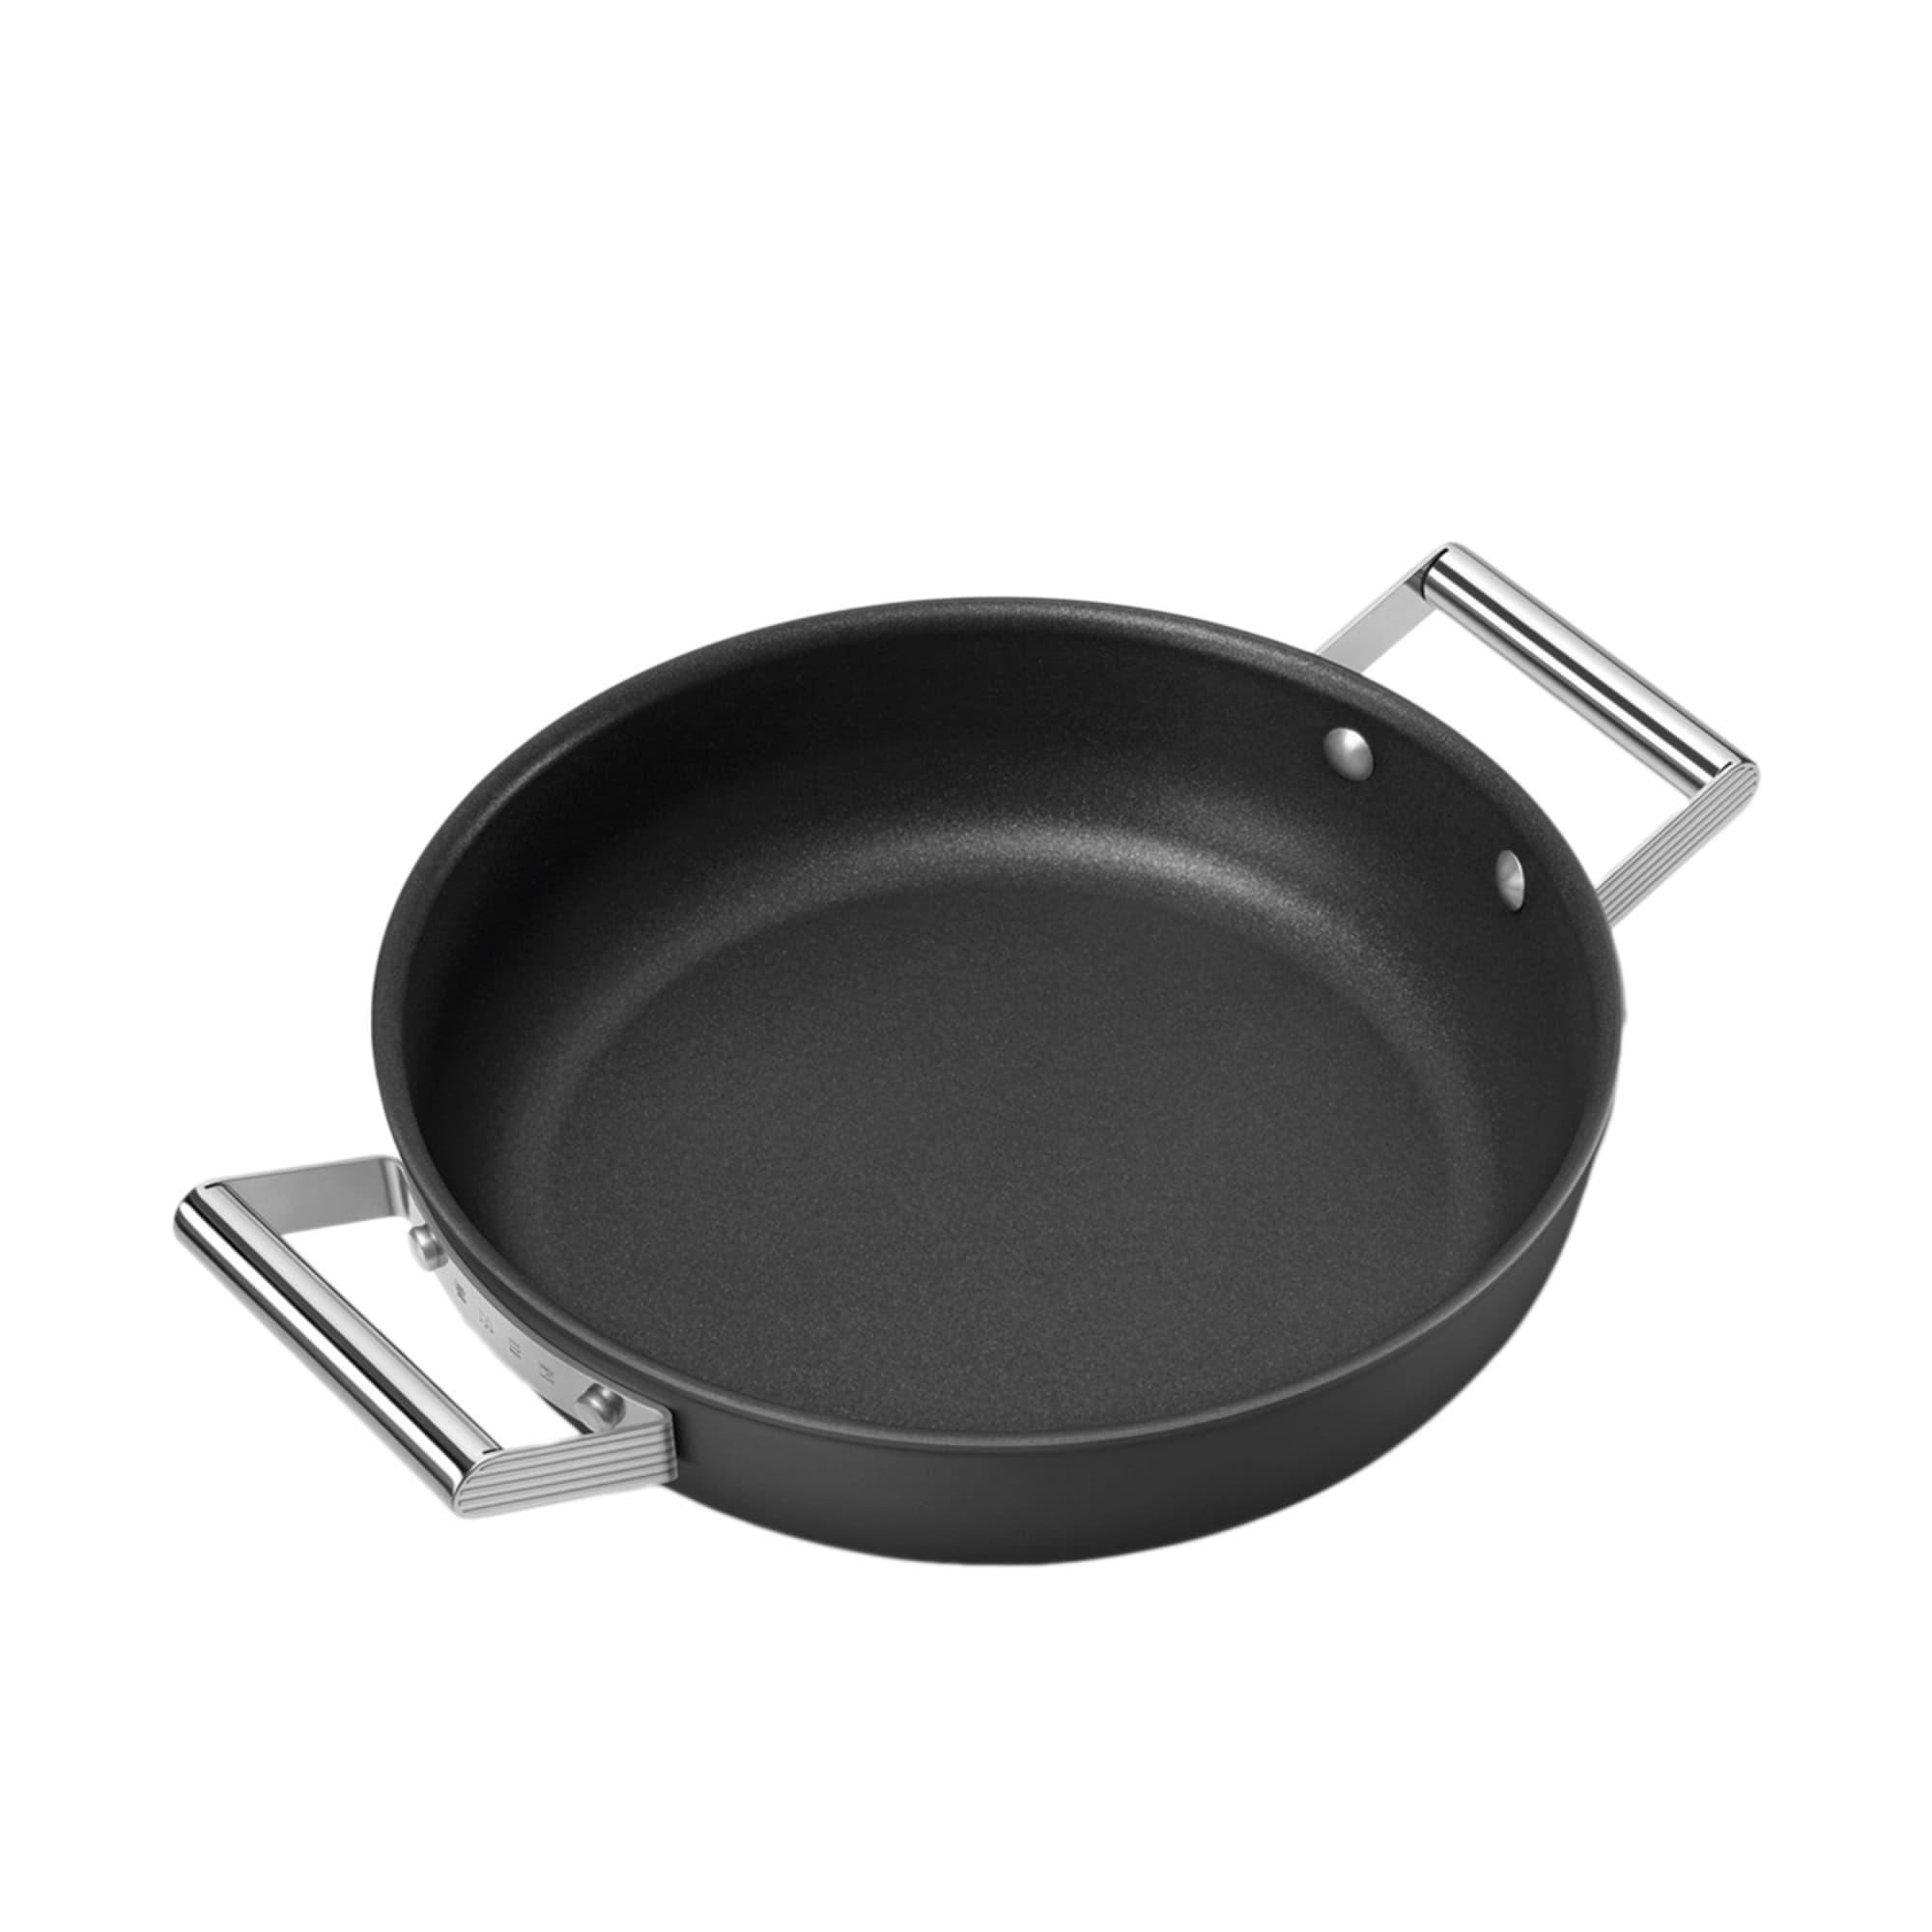 Smeg Non Stick Chef's Pan with Lid 28cm - 3.7L Black Image 8